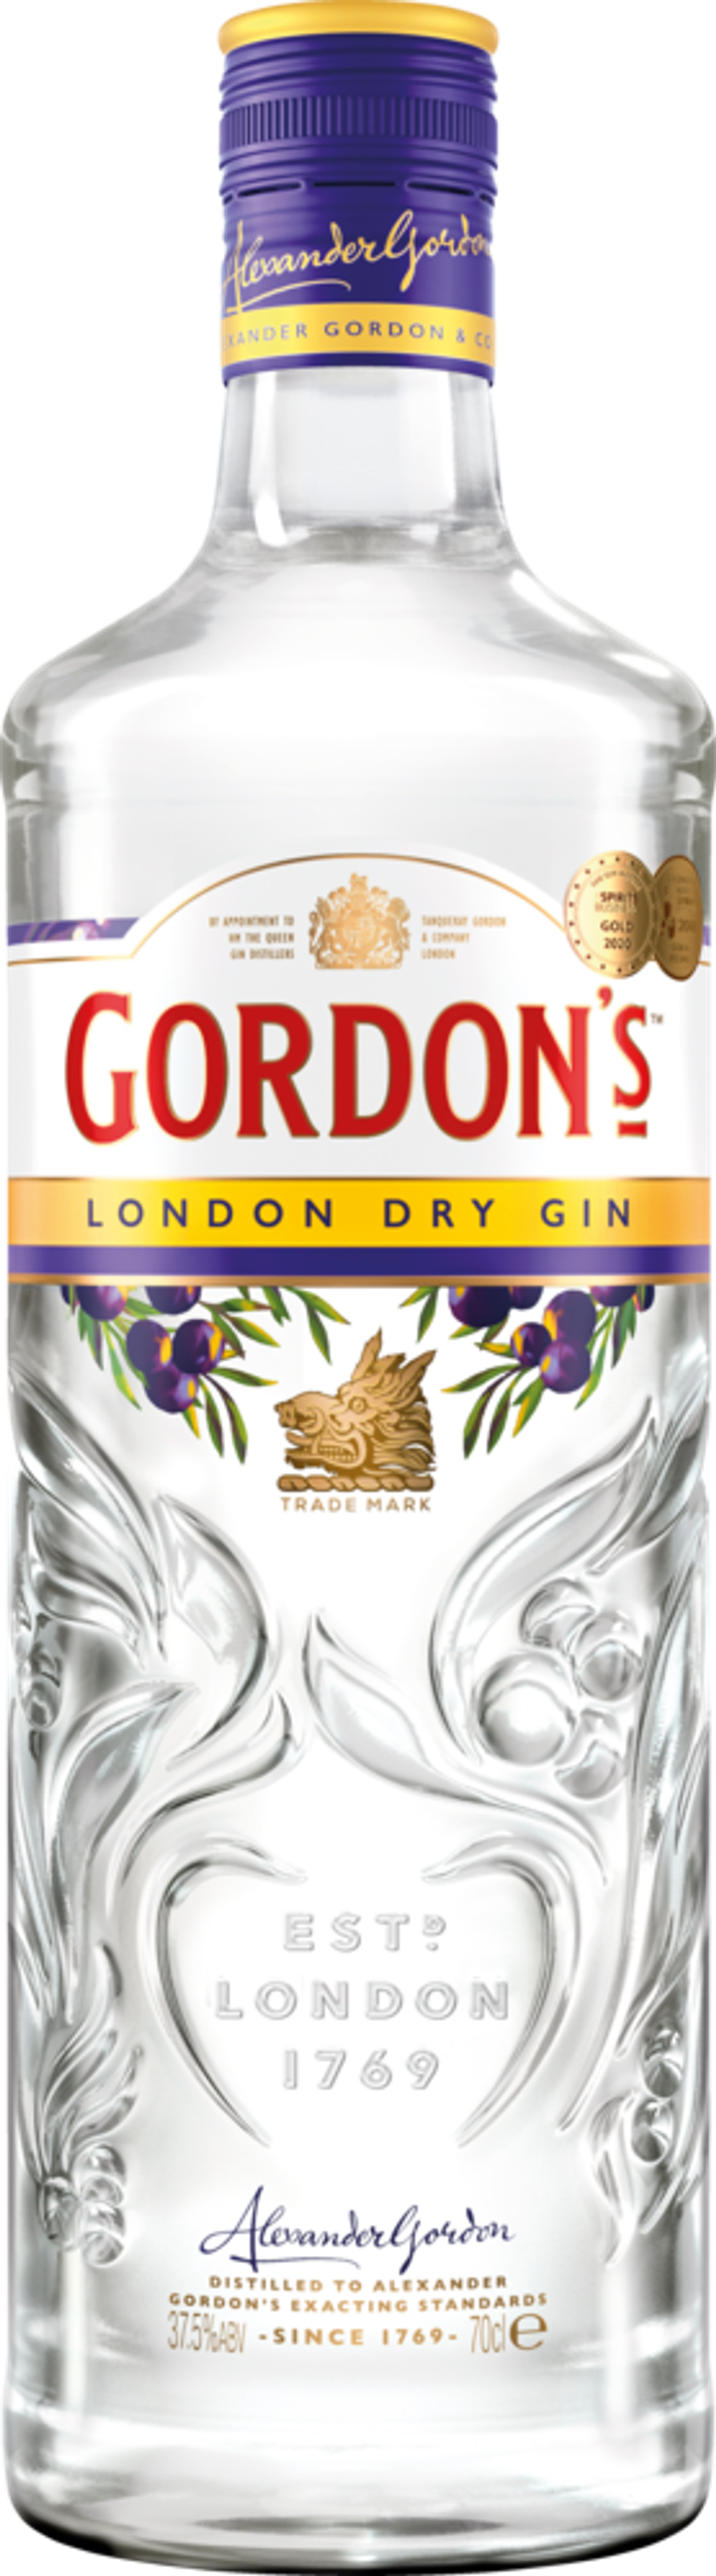 Tilbud på Gordon's Gin fra Fleggaard til 79,99 kr.